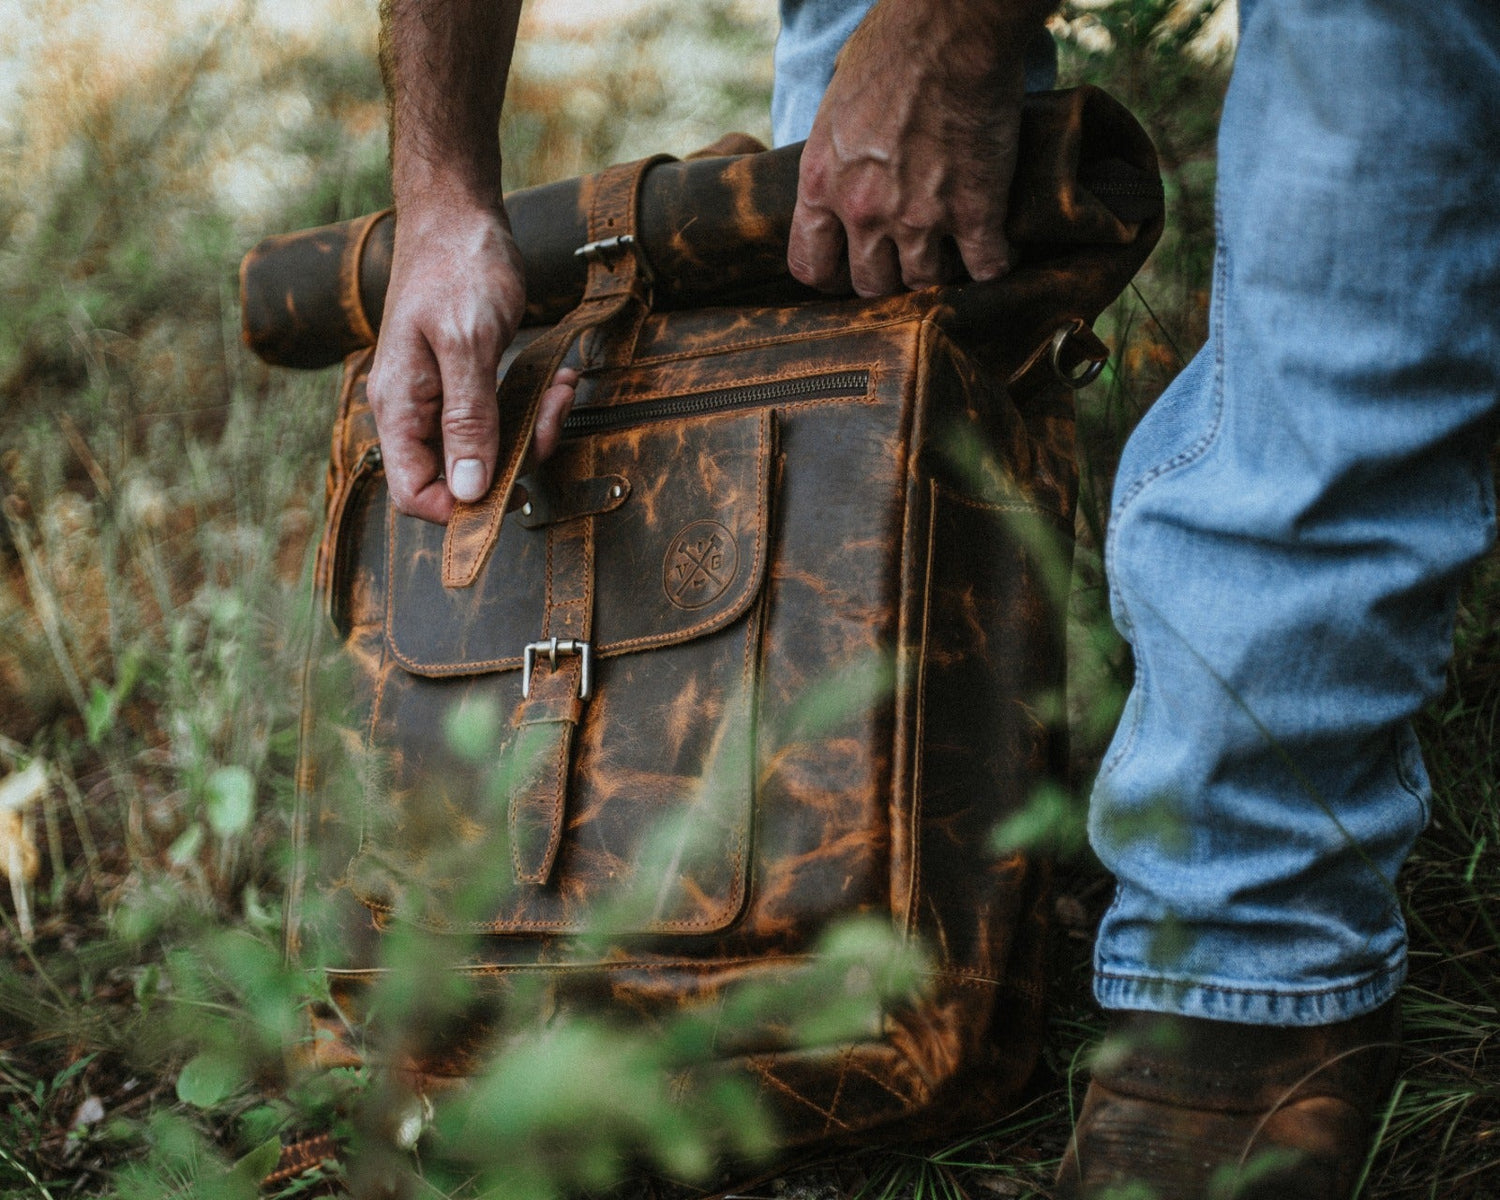 Buffalo Backpack by Vintage Gentlemen – Outdoor Adventures